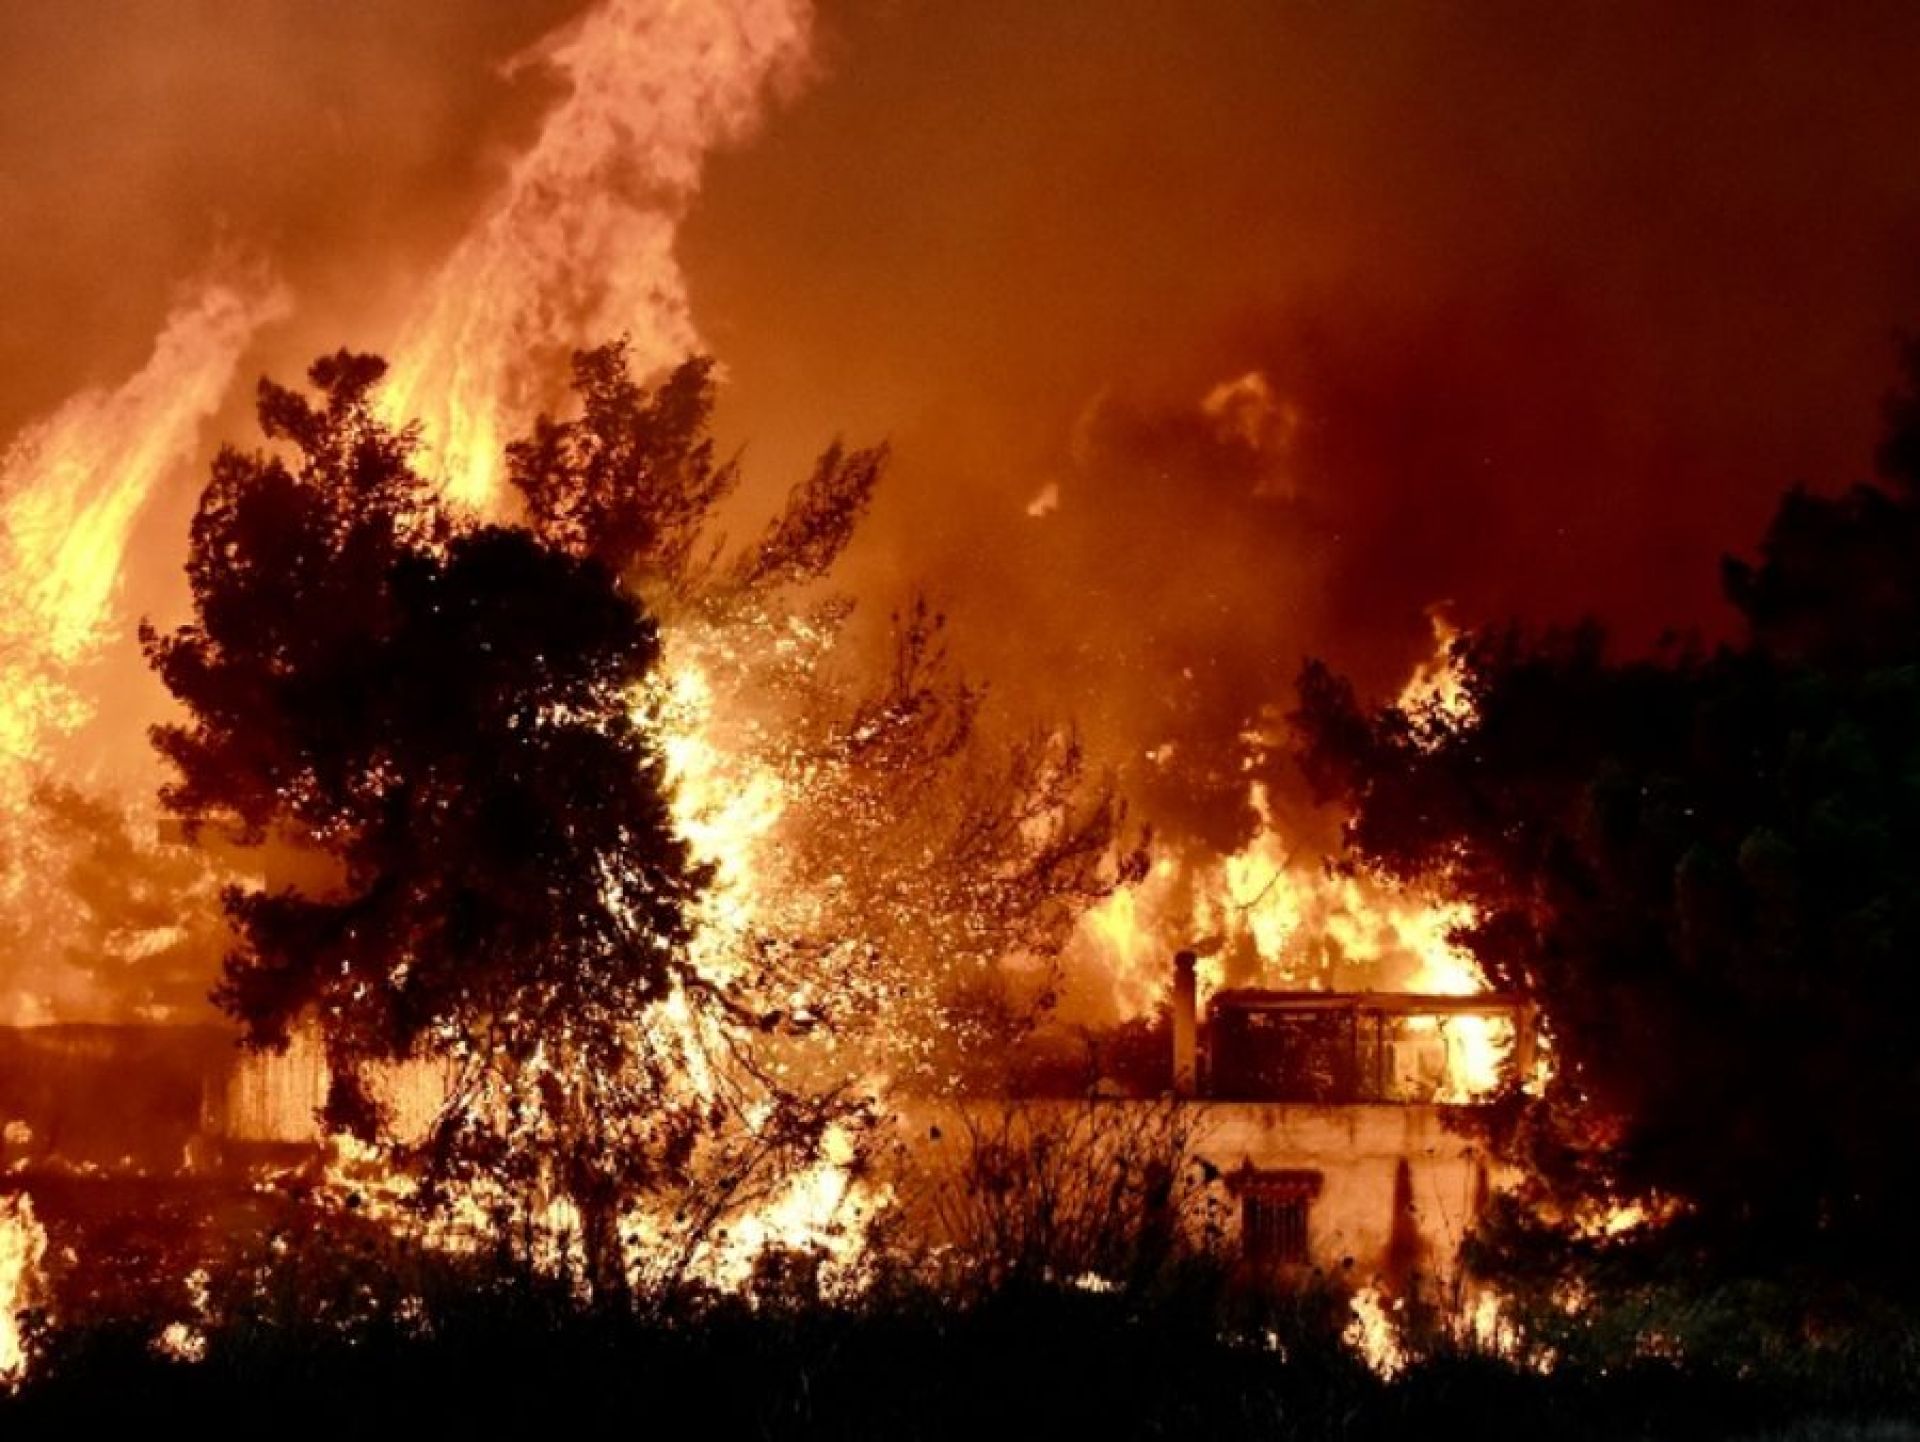 Συγκλονιστικό βίντεο από την κόλαση στο Μάτι: Οι φλόγες τυλίγουν το σπίτι από παντού με τον ιδιοκτήτη μέσα